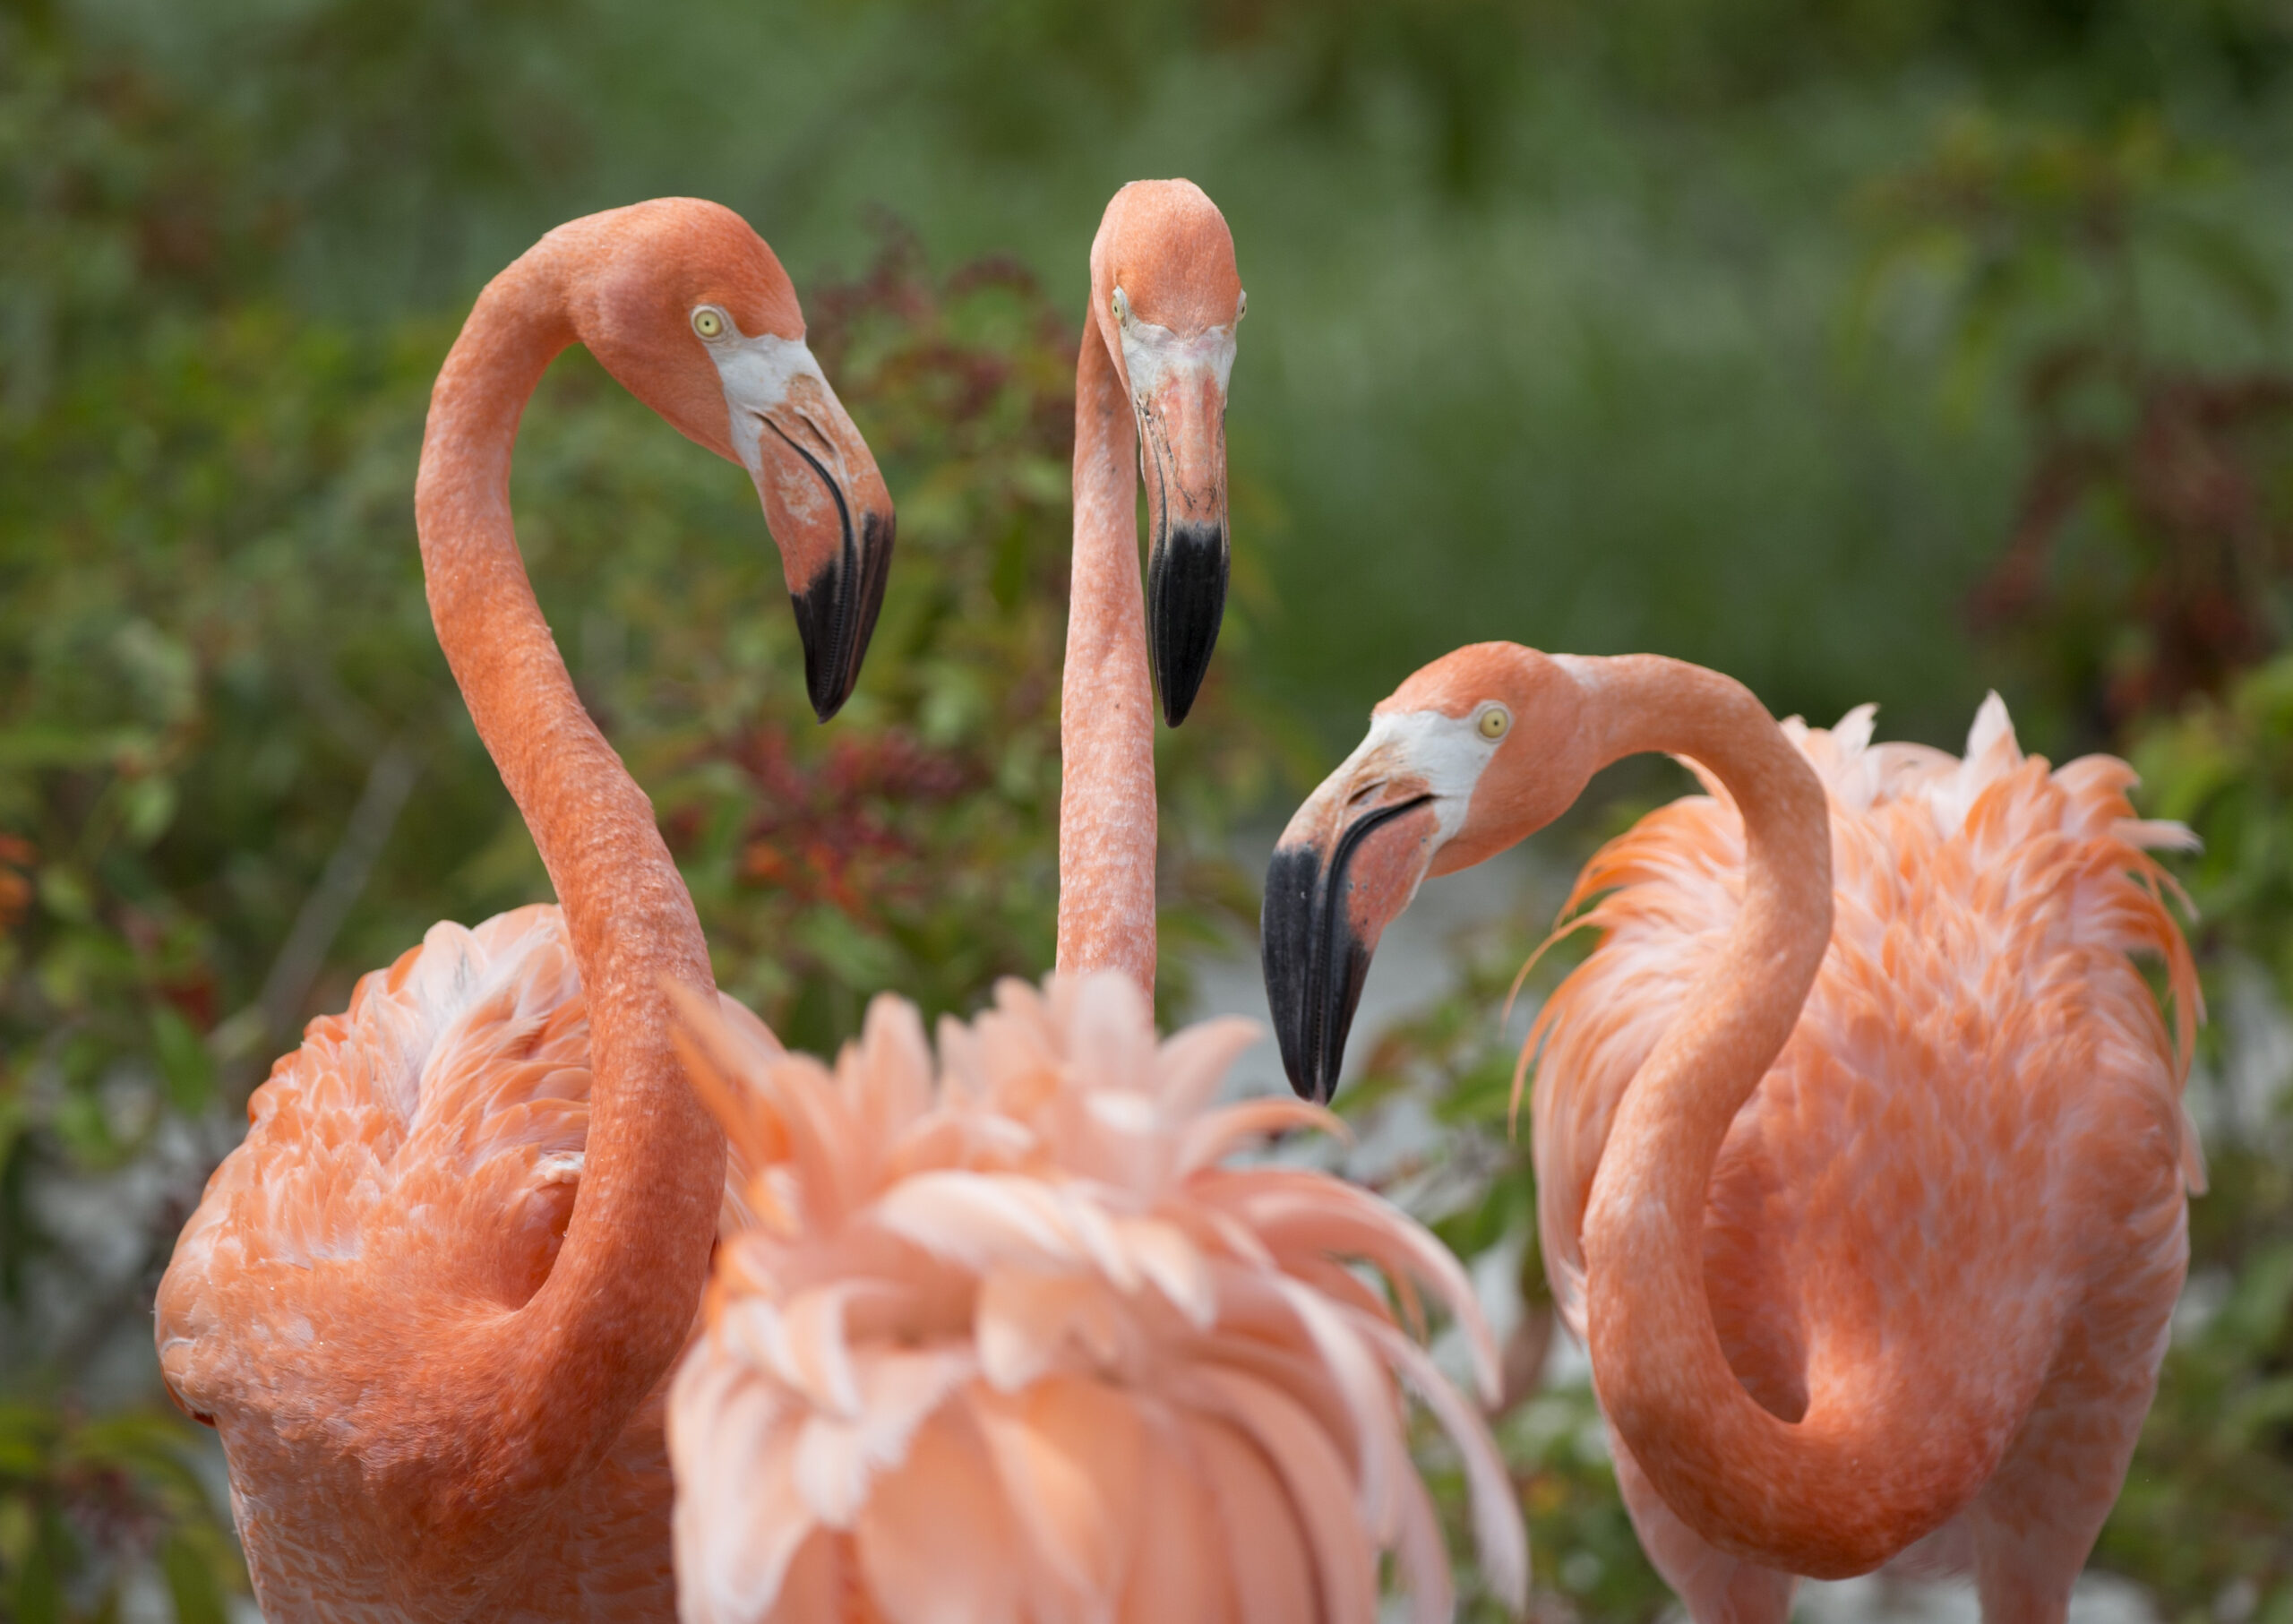 American flamingos